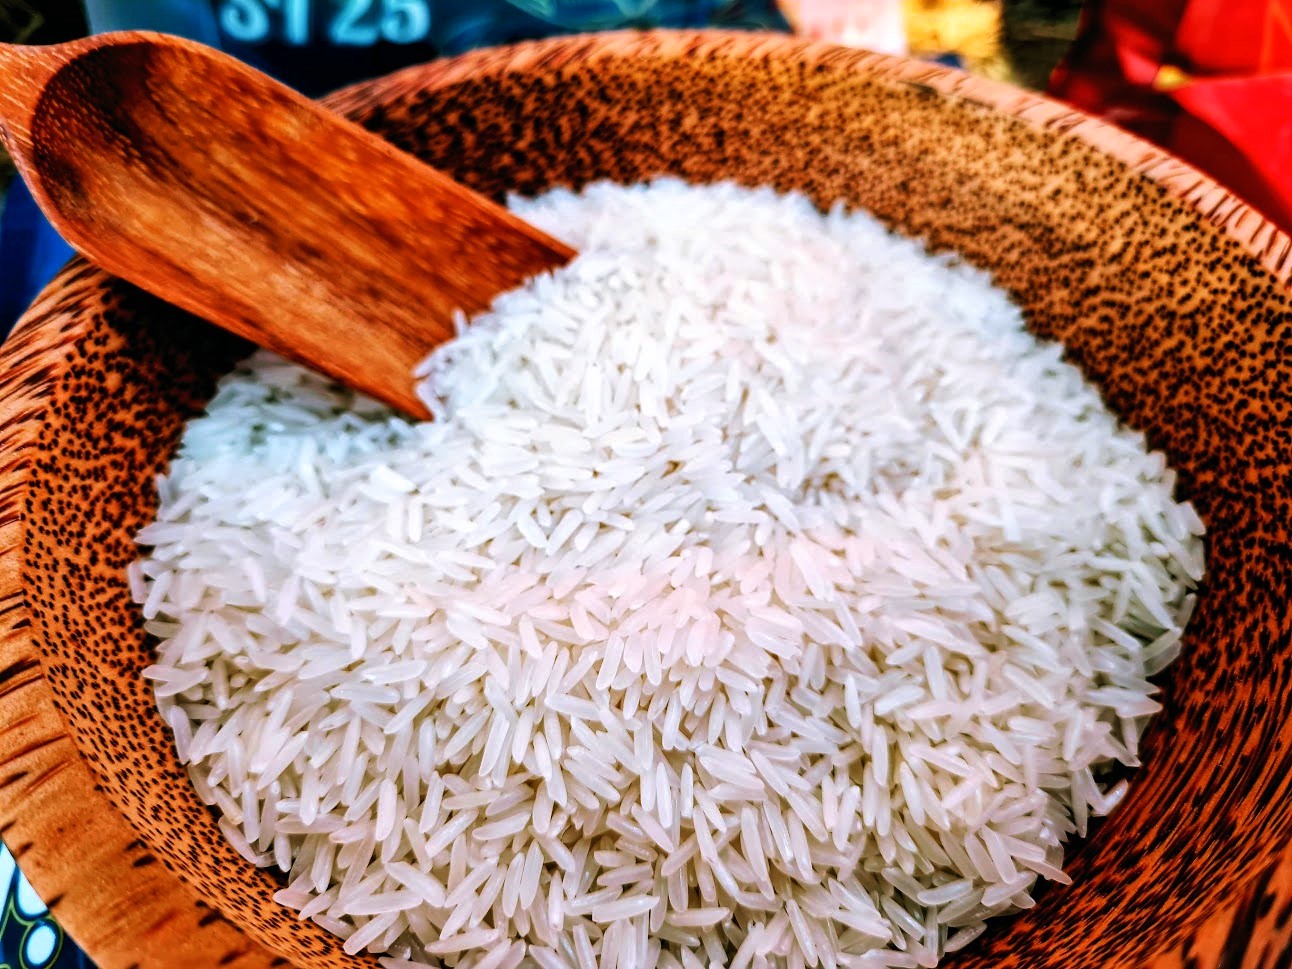 Chất lượng gạo của Việt Nam ngày càng cao, đáp ứng yêu cầu của các thị trường nhập khẩu cao cấp khó tính. Ảnh: Vũ Long